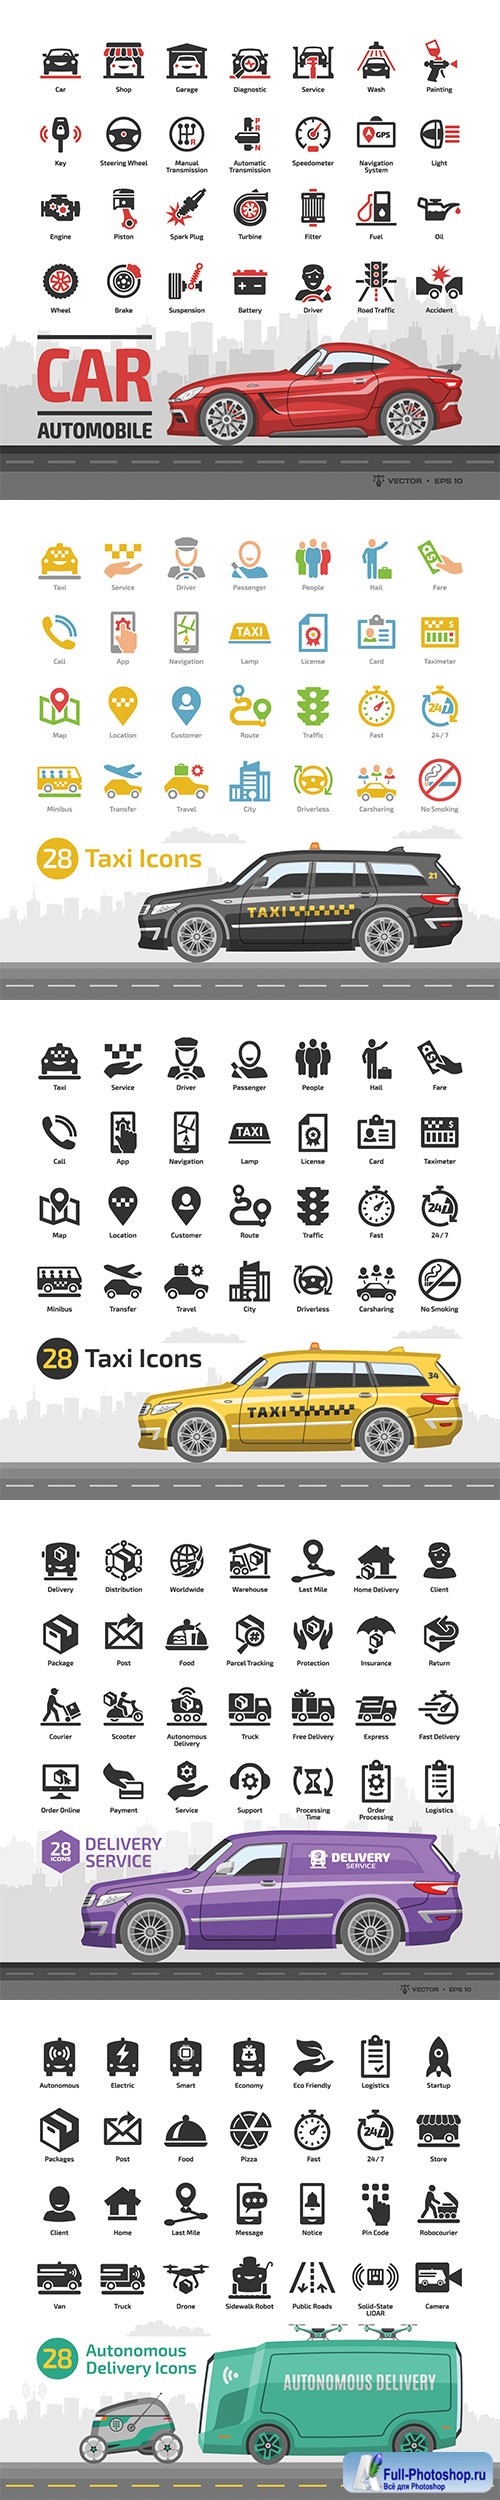 Car icon set with mockup and basic automotive symbols